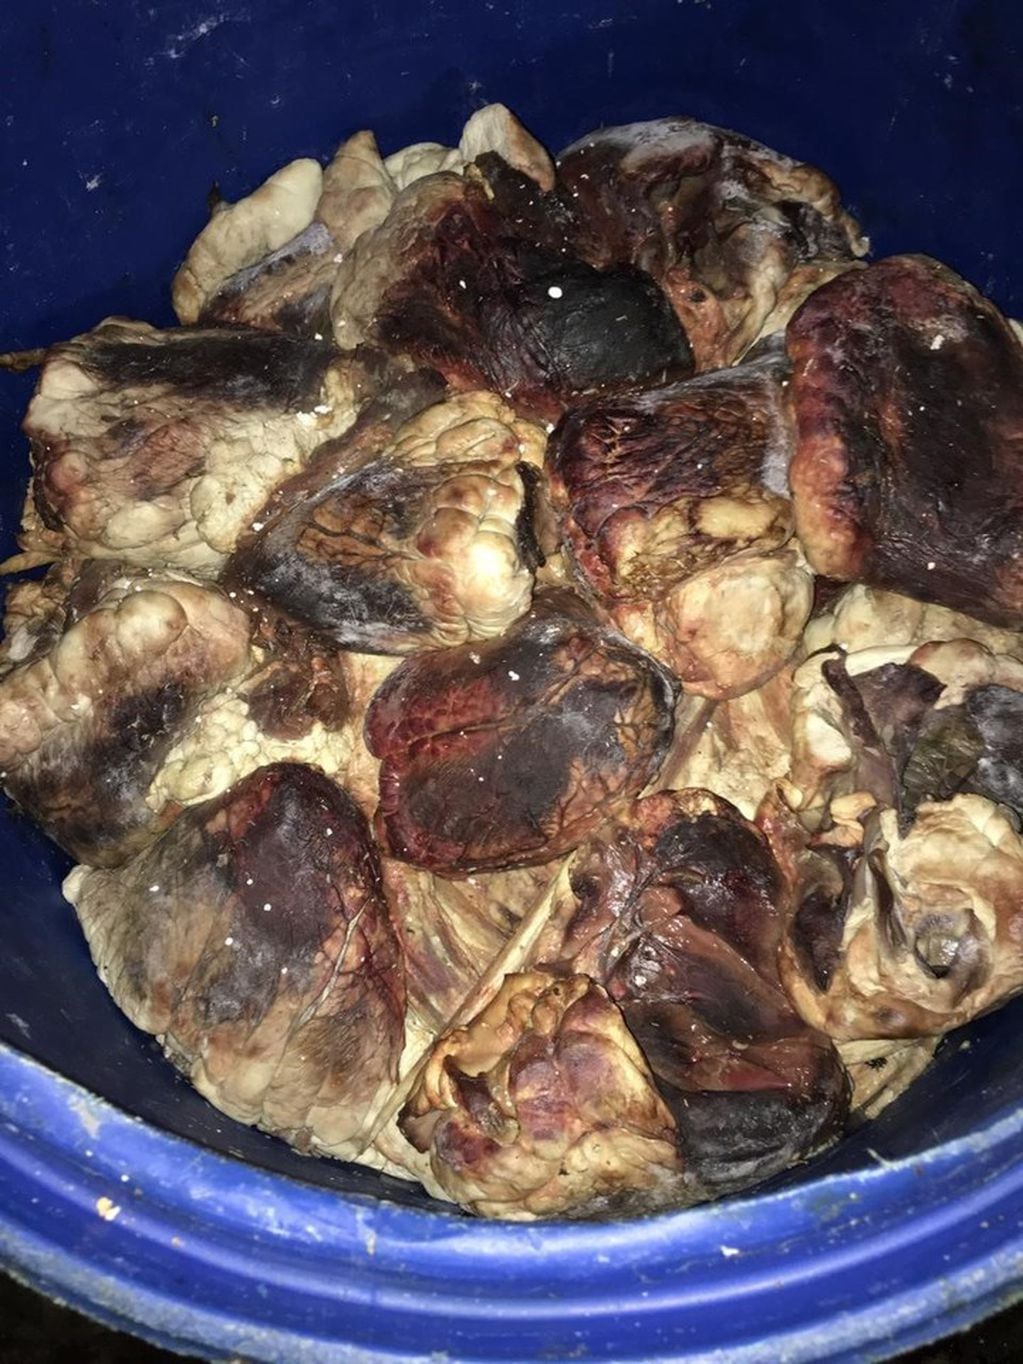 Carne podrida, ratas e insectos en un frigorífico en el barrio porteño de Flores. (Clarín)